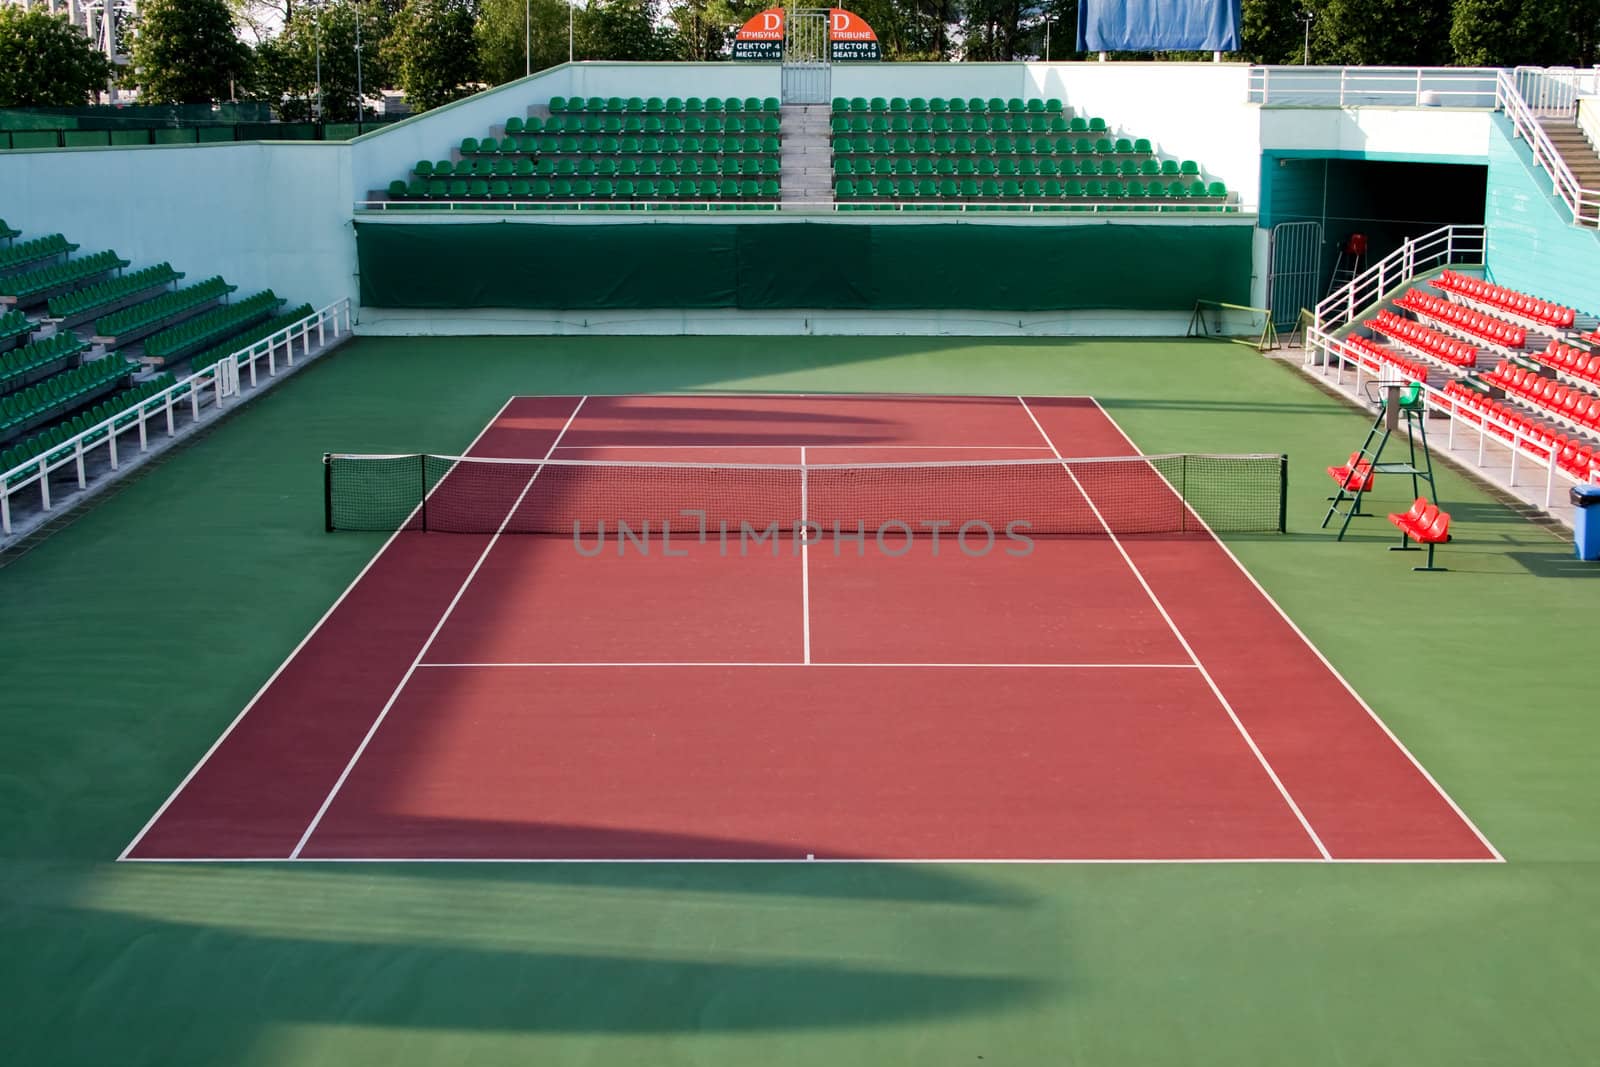 Tennis court by dazhetak